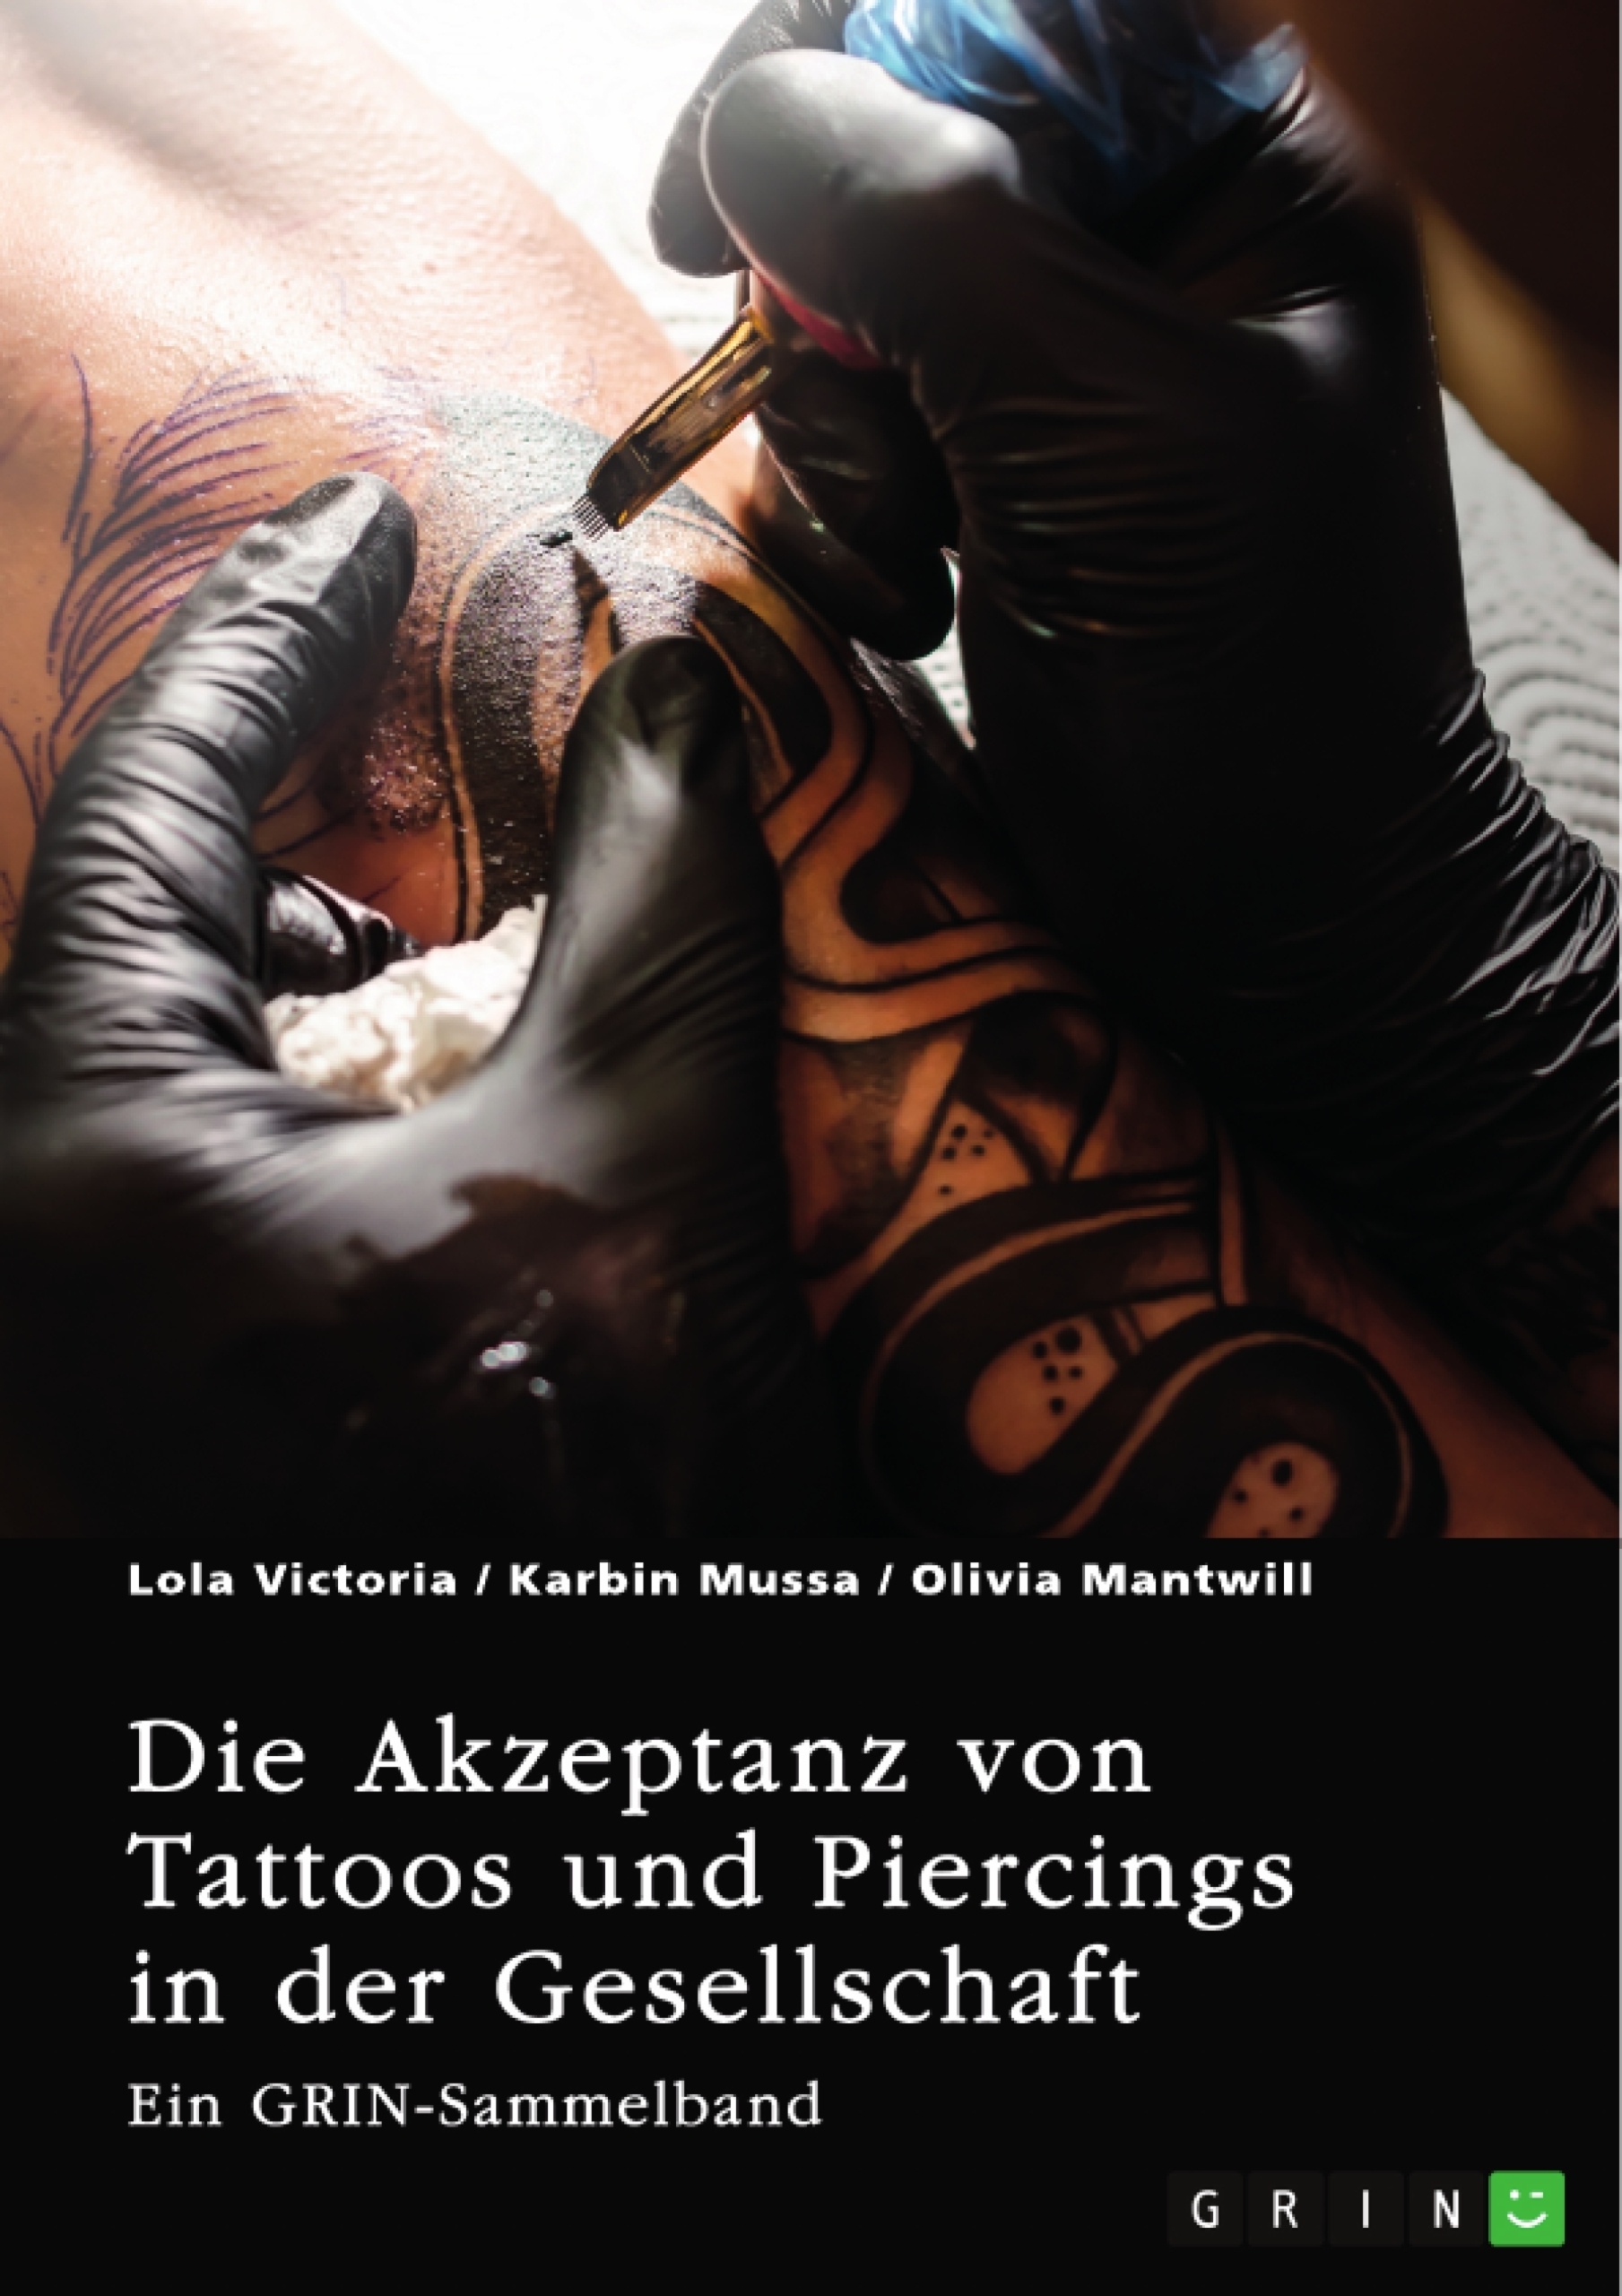 Titre: Die Akzeptanz von Tattoos und Piercings in der Gesellschaft. Über Tätowierungen im Job, im Christentum und in der indischen Kultur